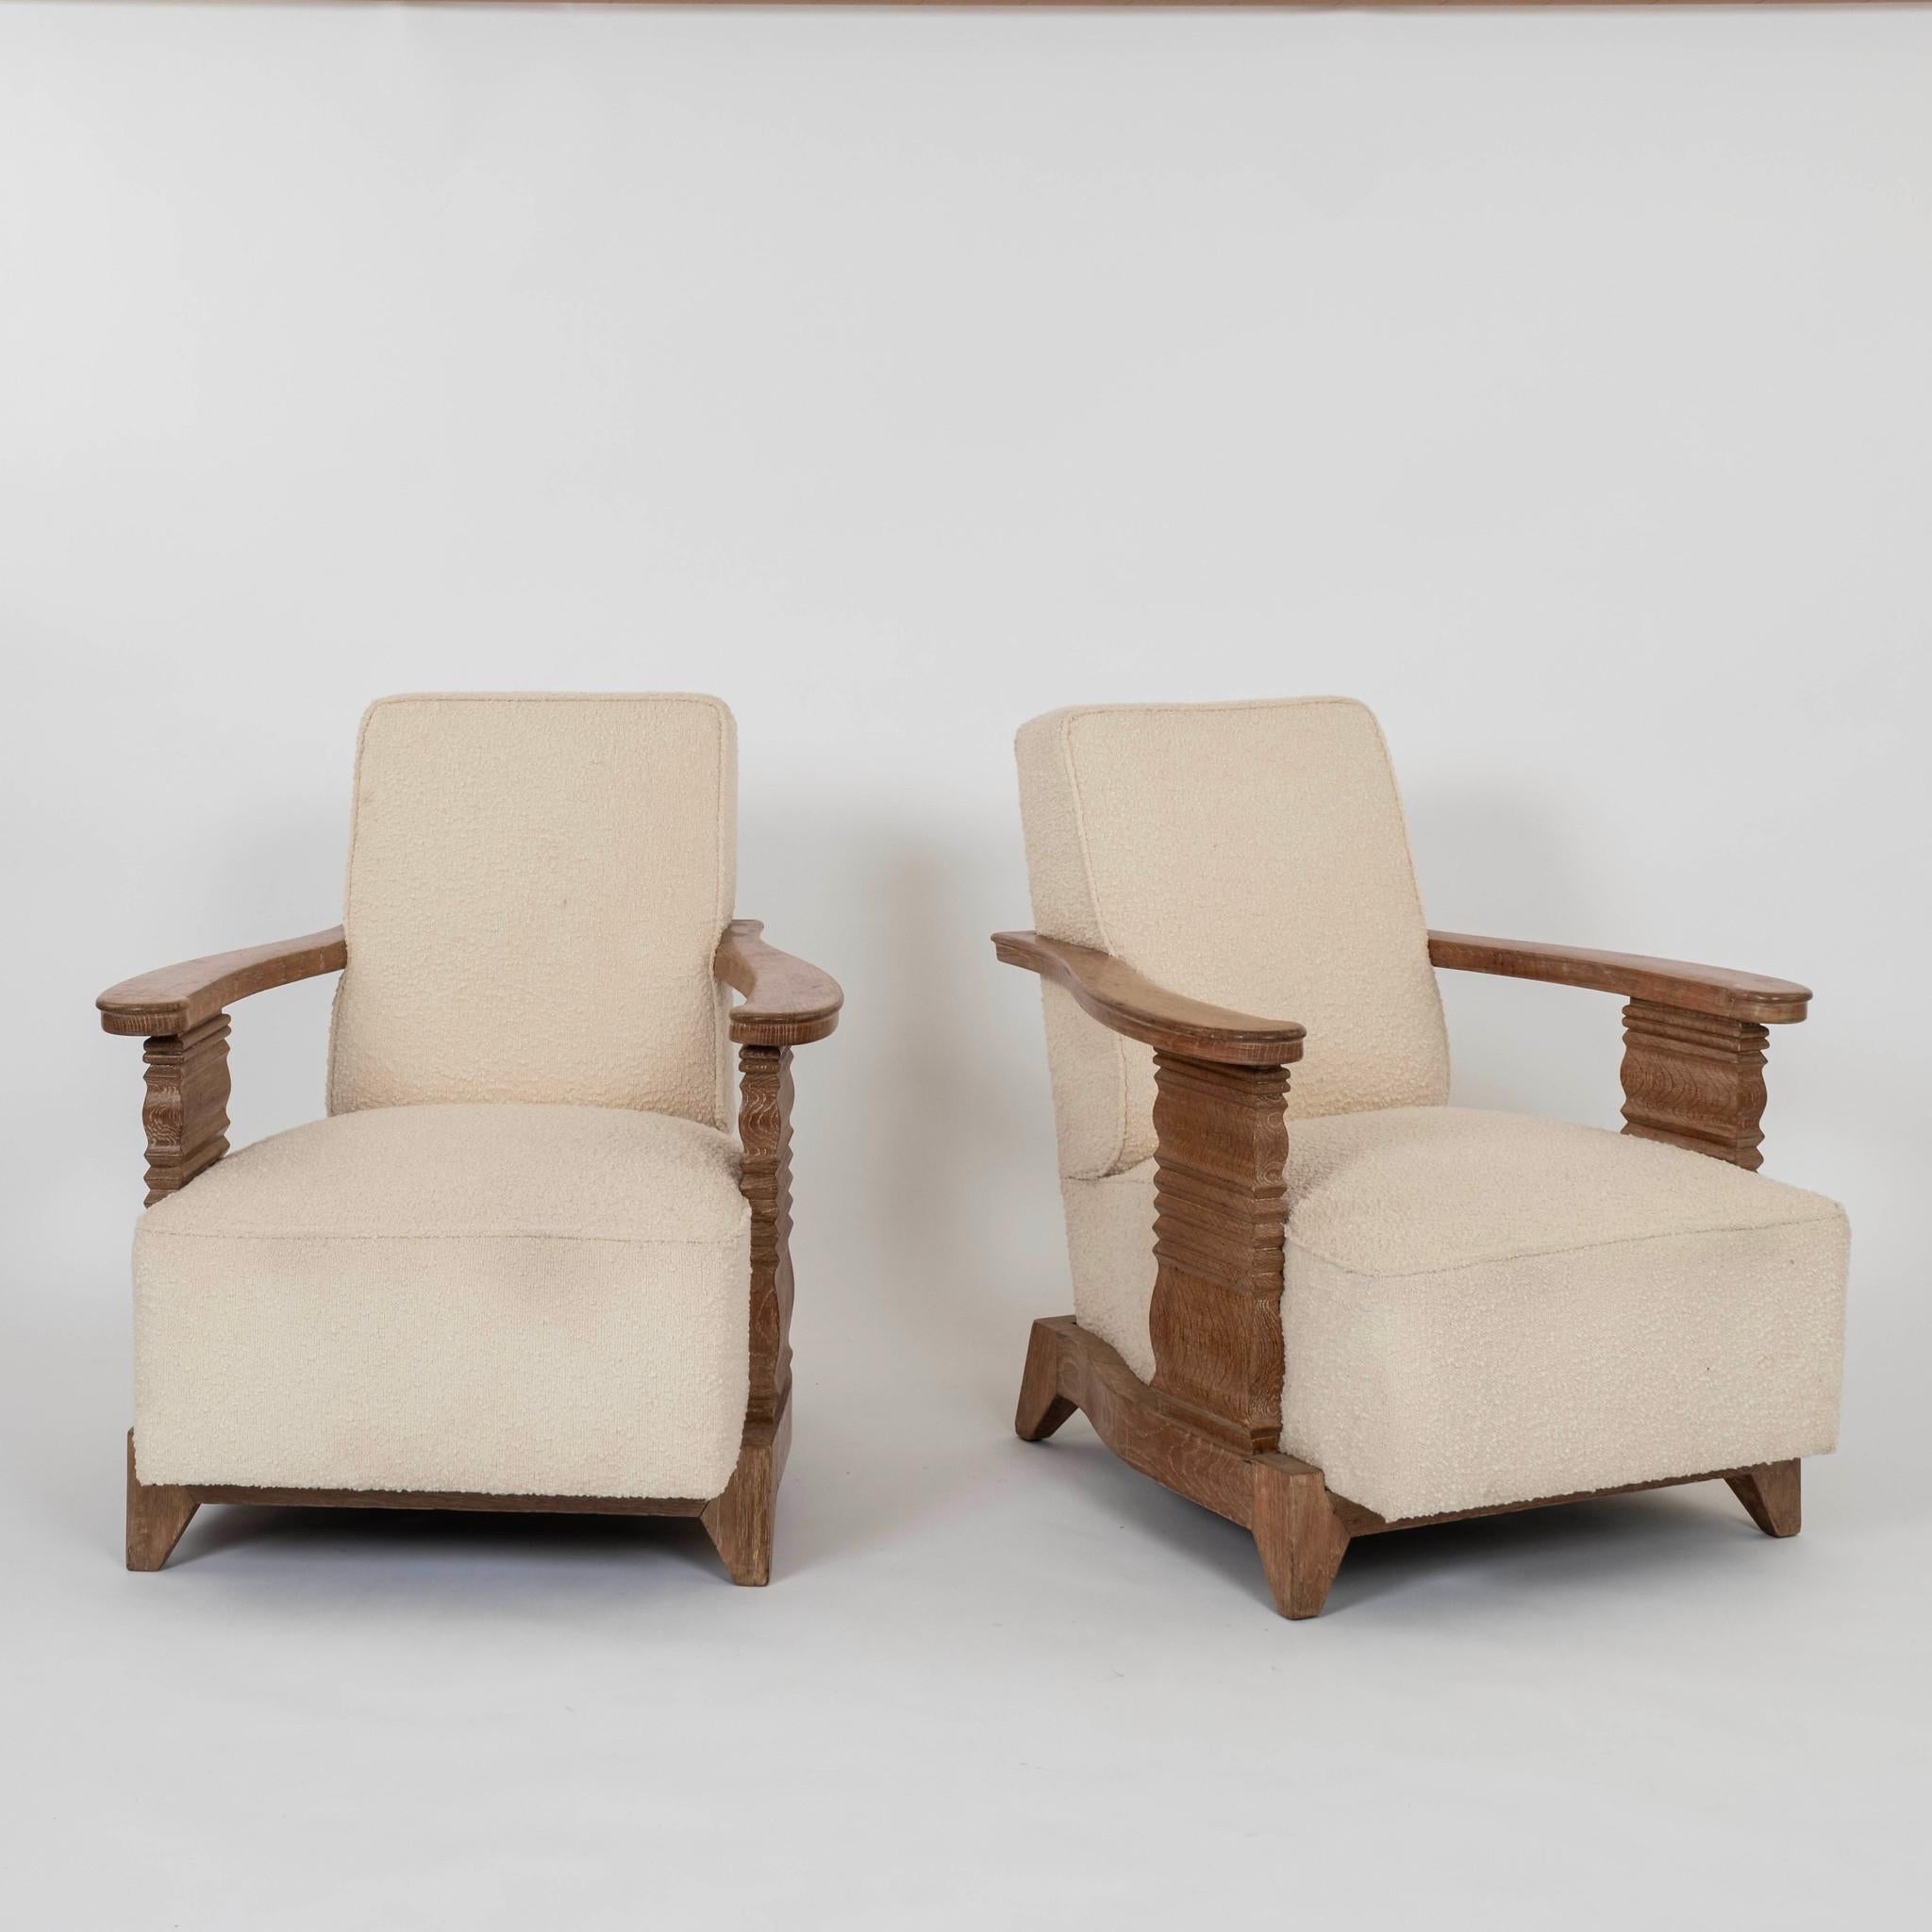 Paire de chaises en chêne blanc céréalier de style Art déco français avec accoudoirs réticulés et noueux.  boucle.